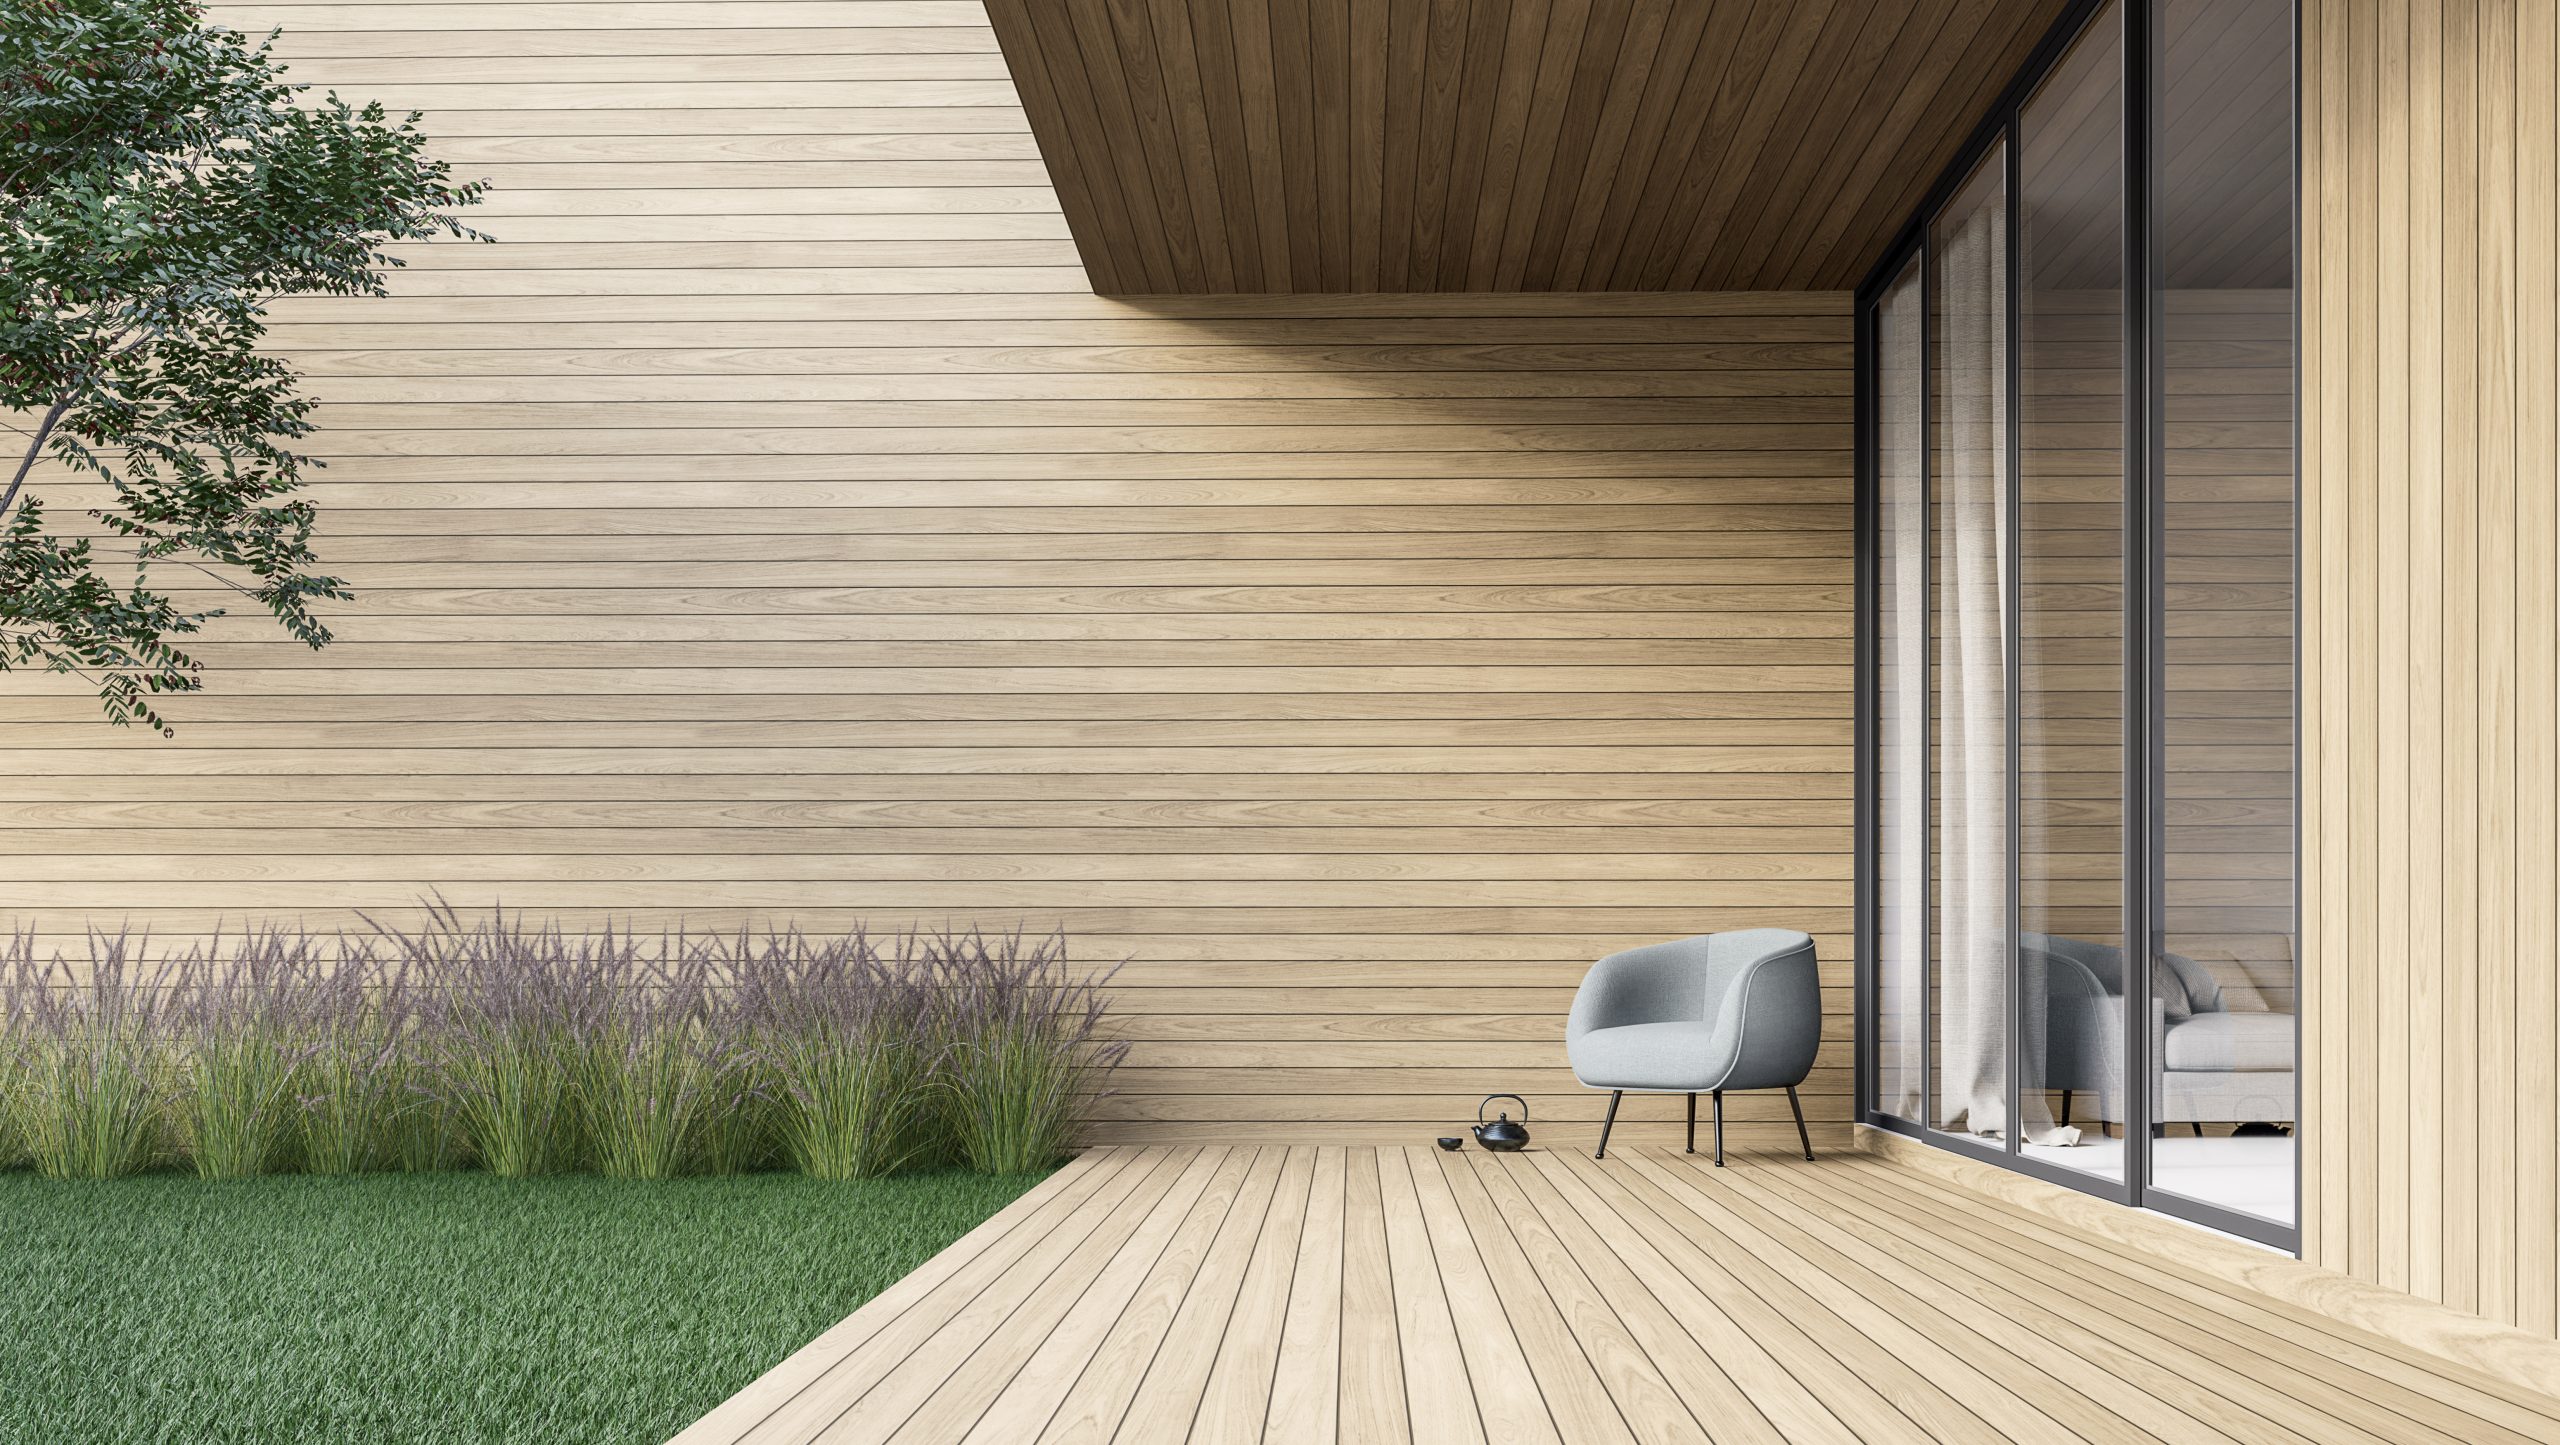 Die Holzdielen auf einer Terrasse können durch einen Outdoor Teppich geschont werden. Foto: © onzon / stock adobe